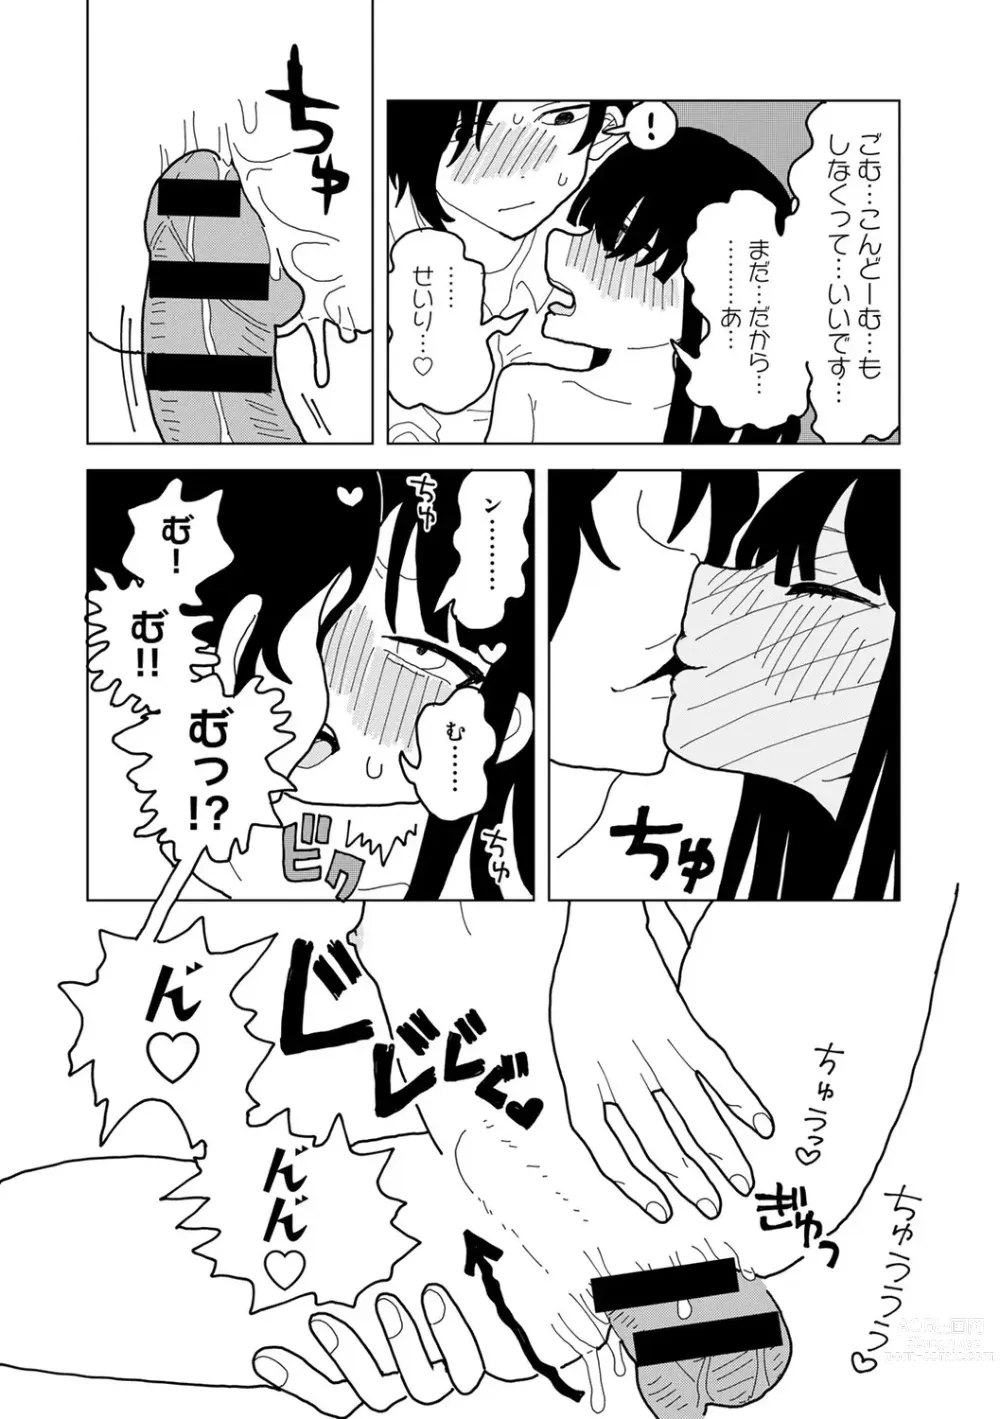 Page 186 of manga COMIC kisshug vol.3